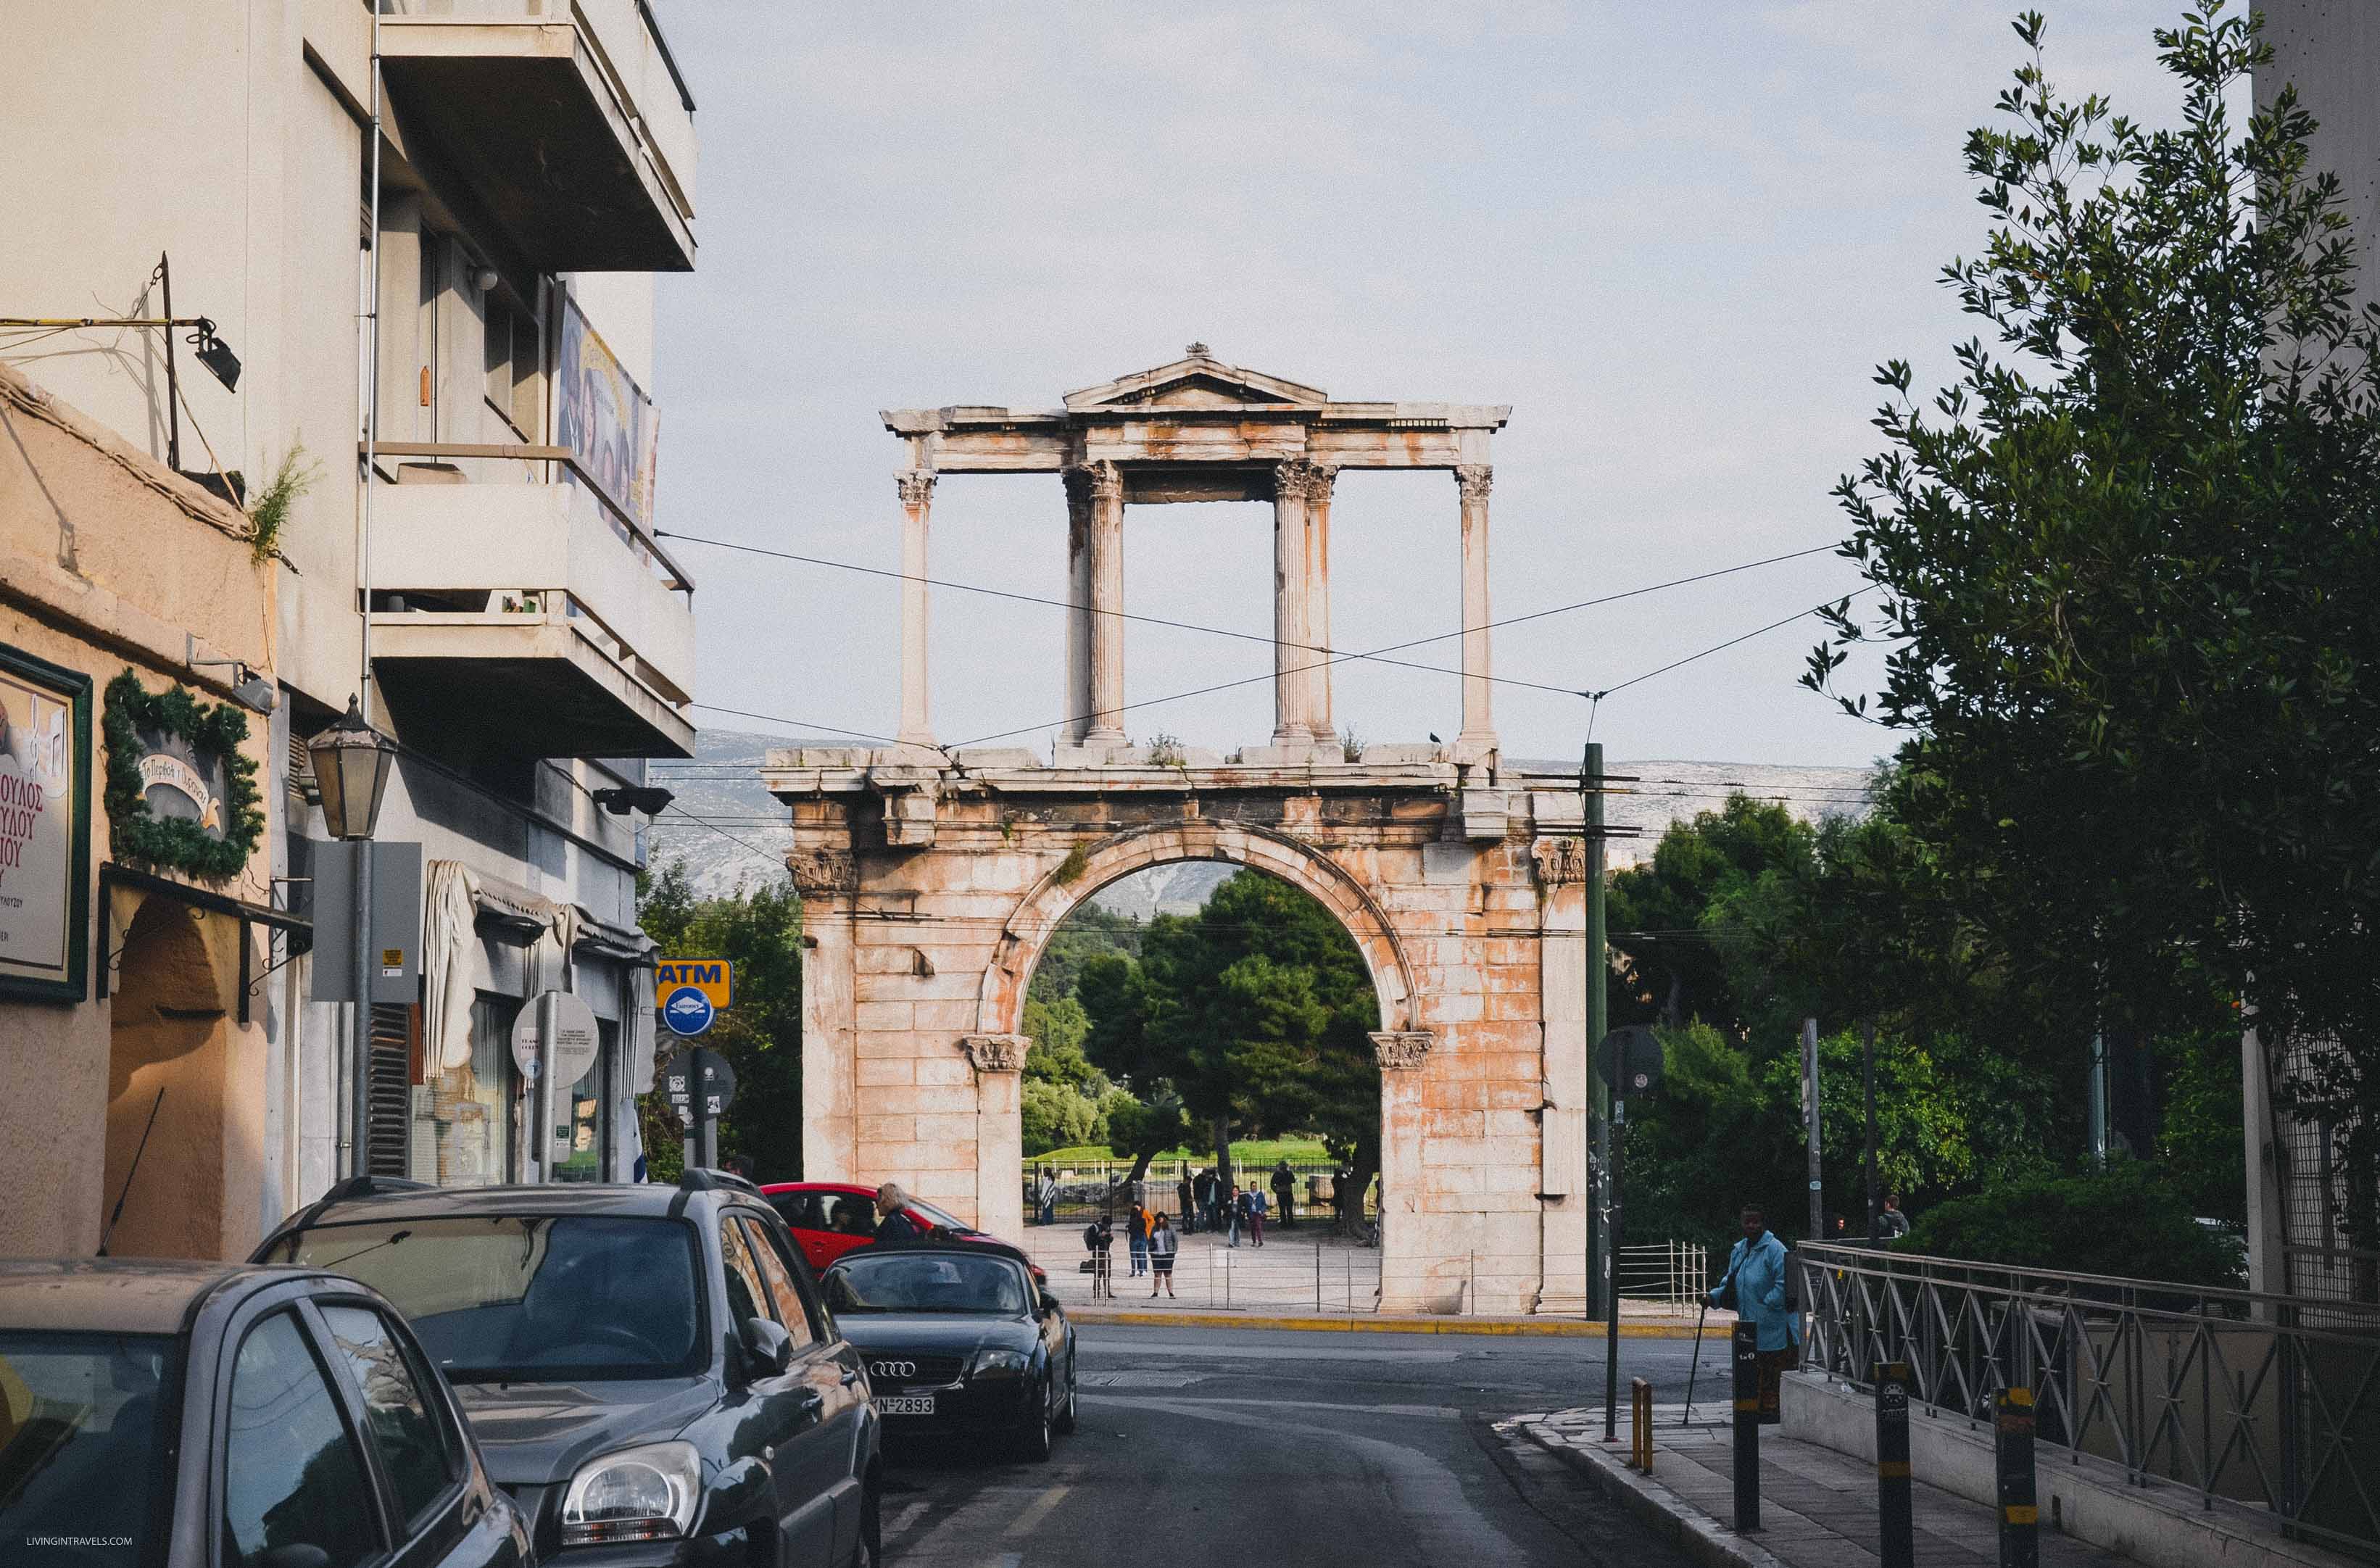  24 часа в Афинах: куда сходить и что посмотреть